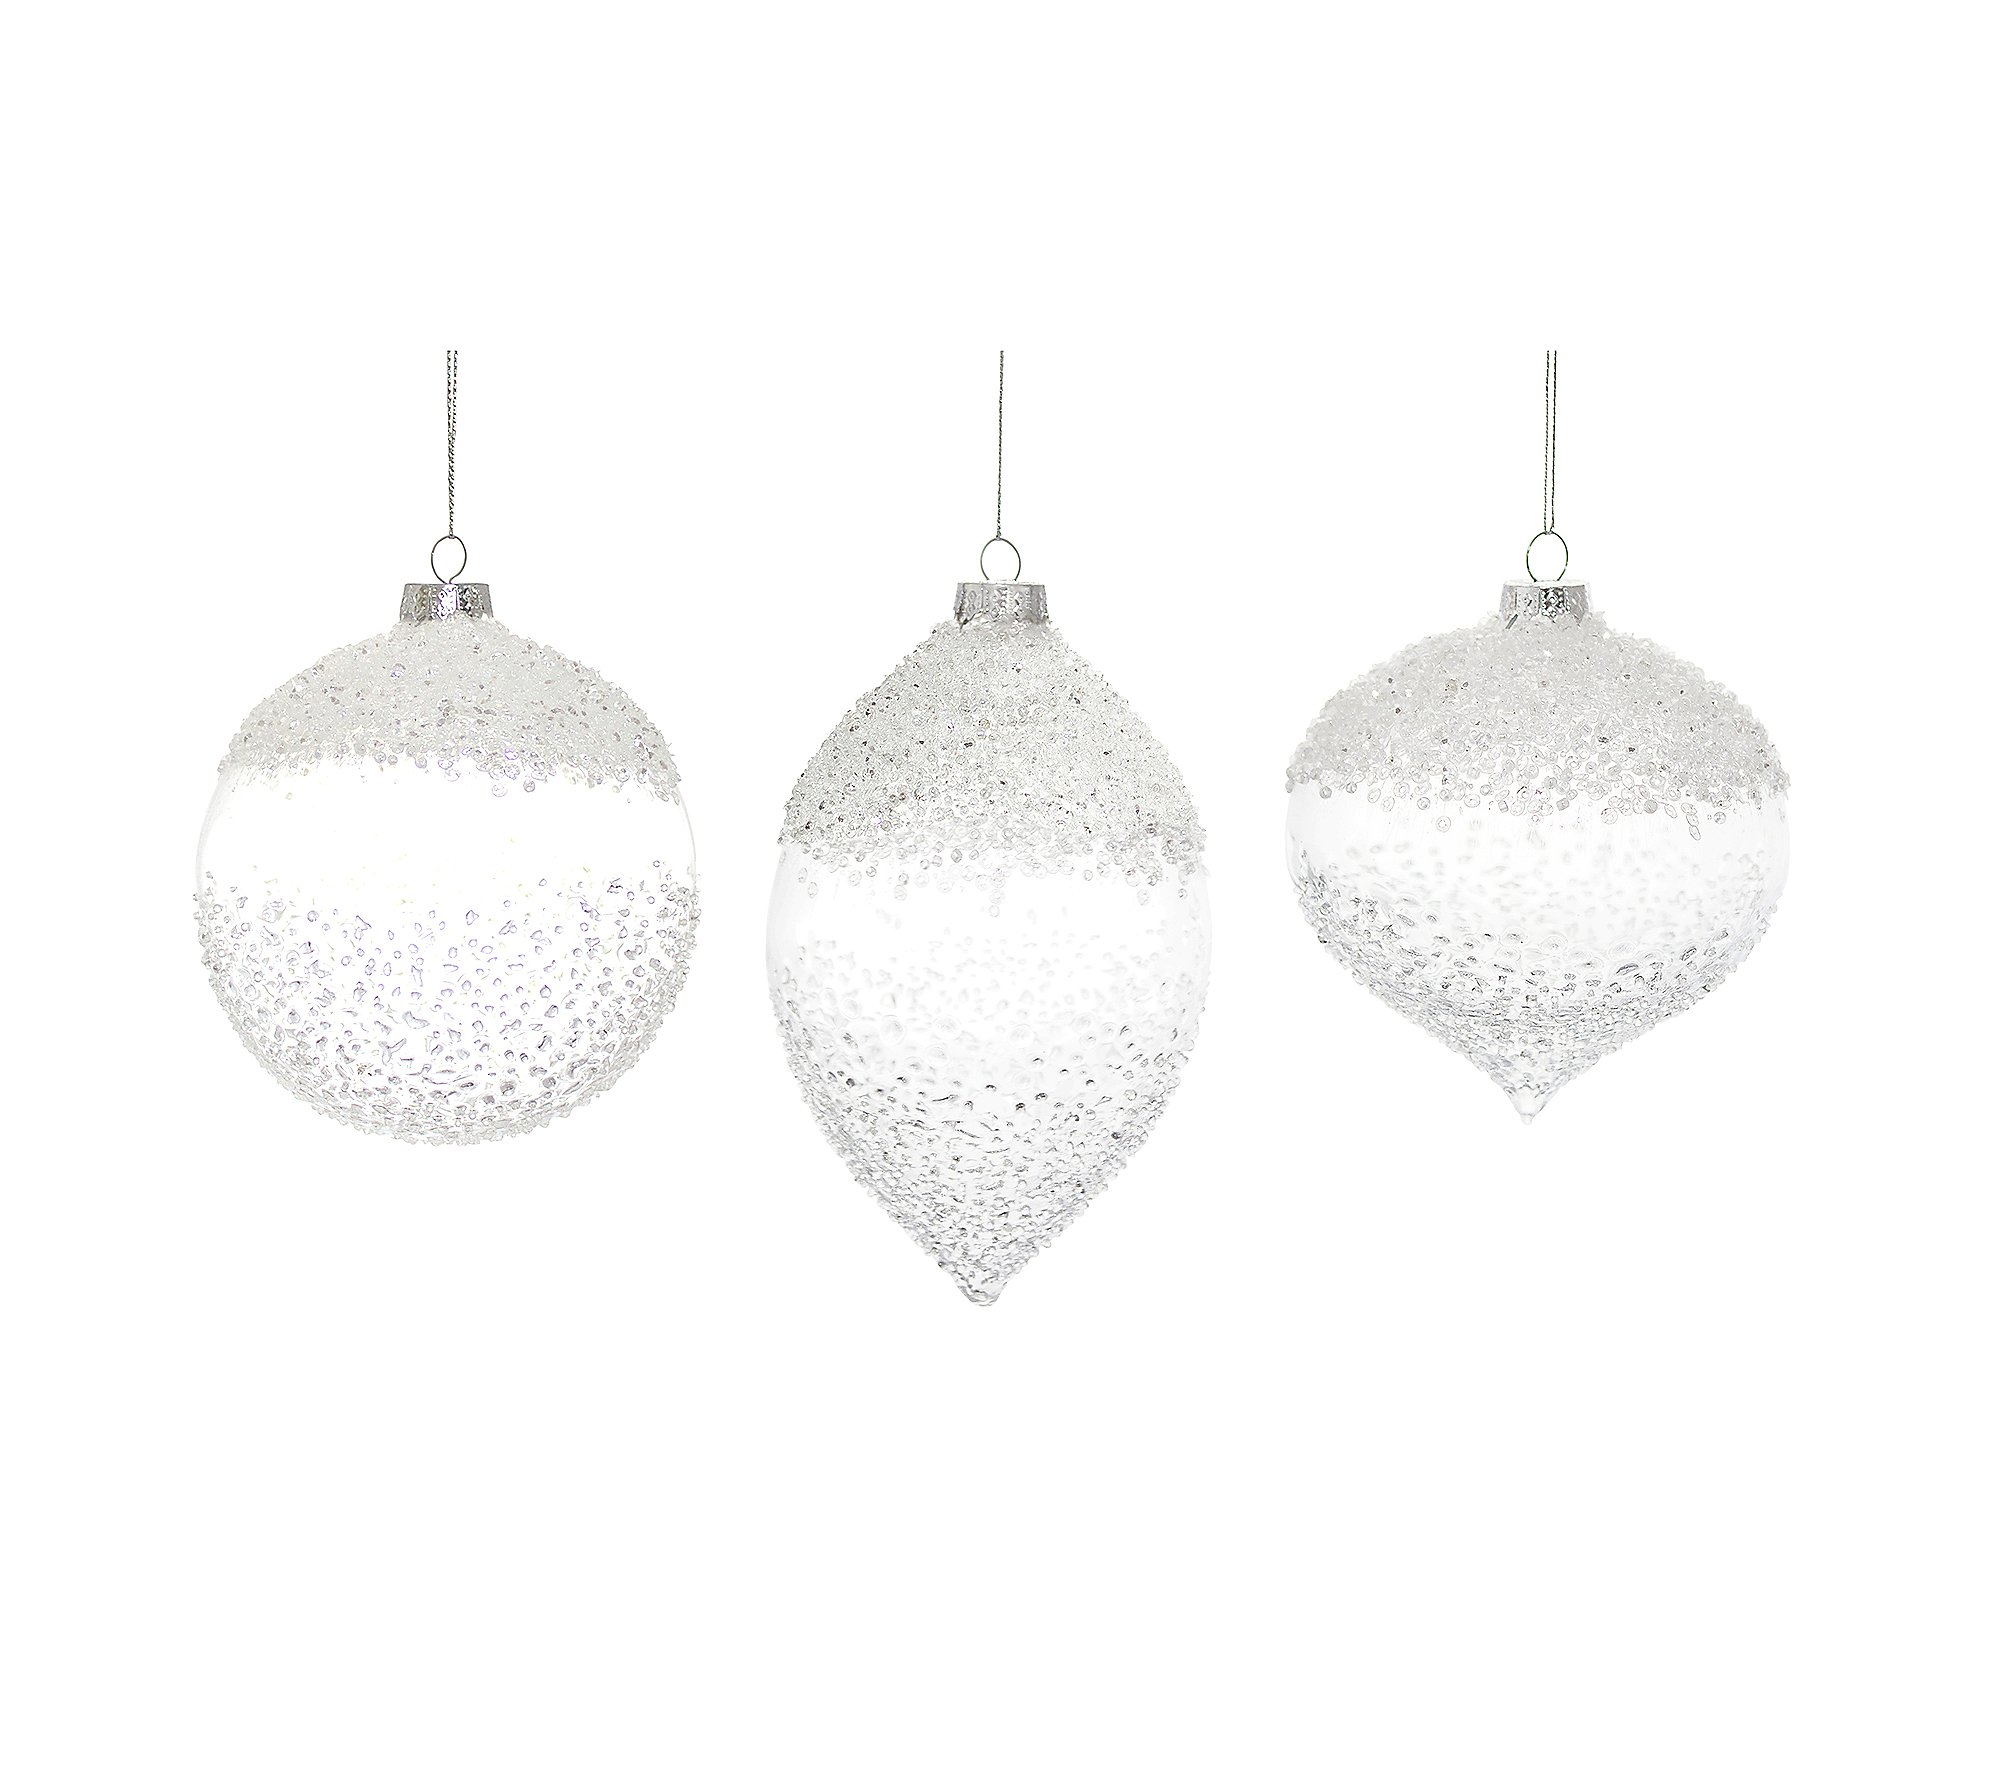 Melrose White Beaded Glass Ornament (Set of 6)